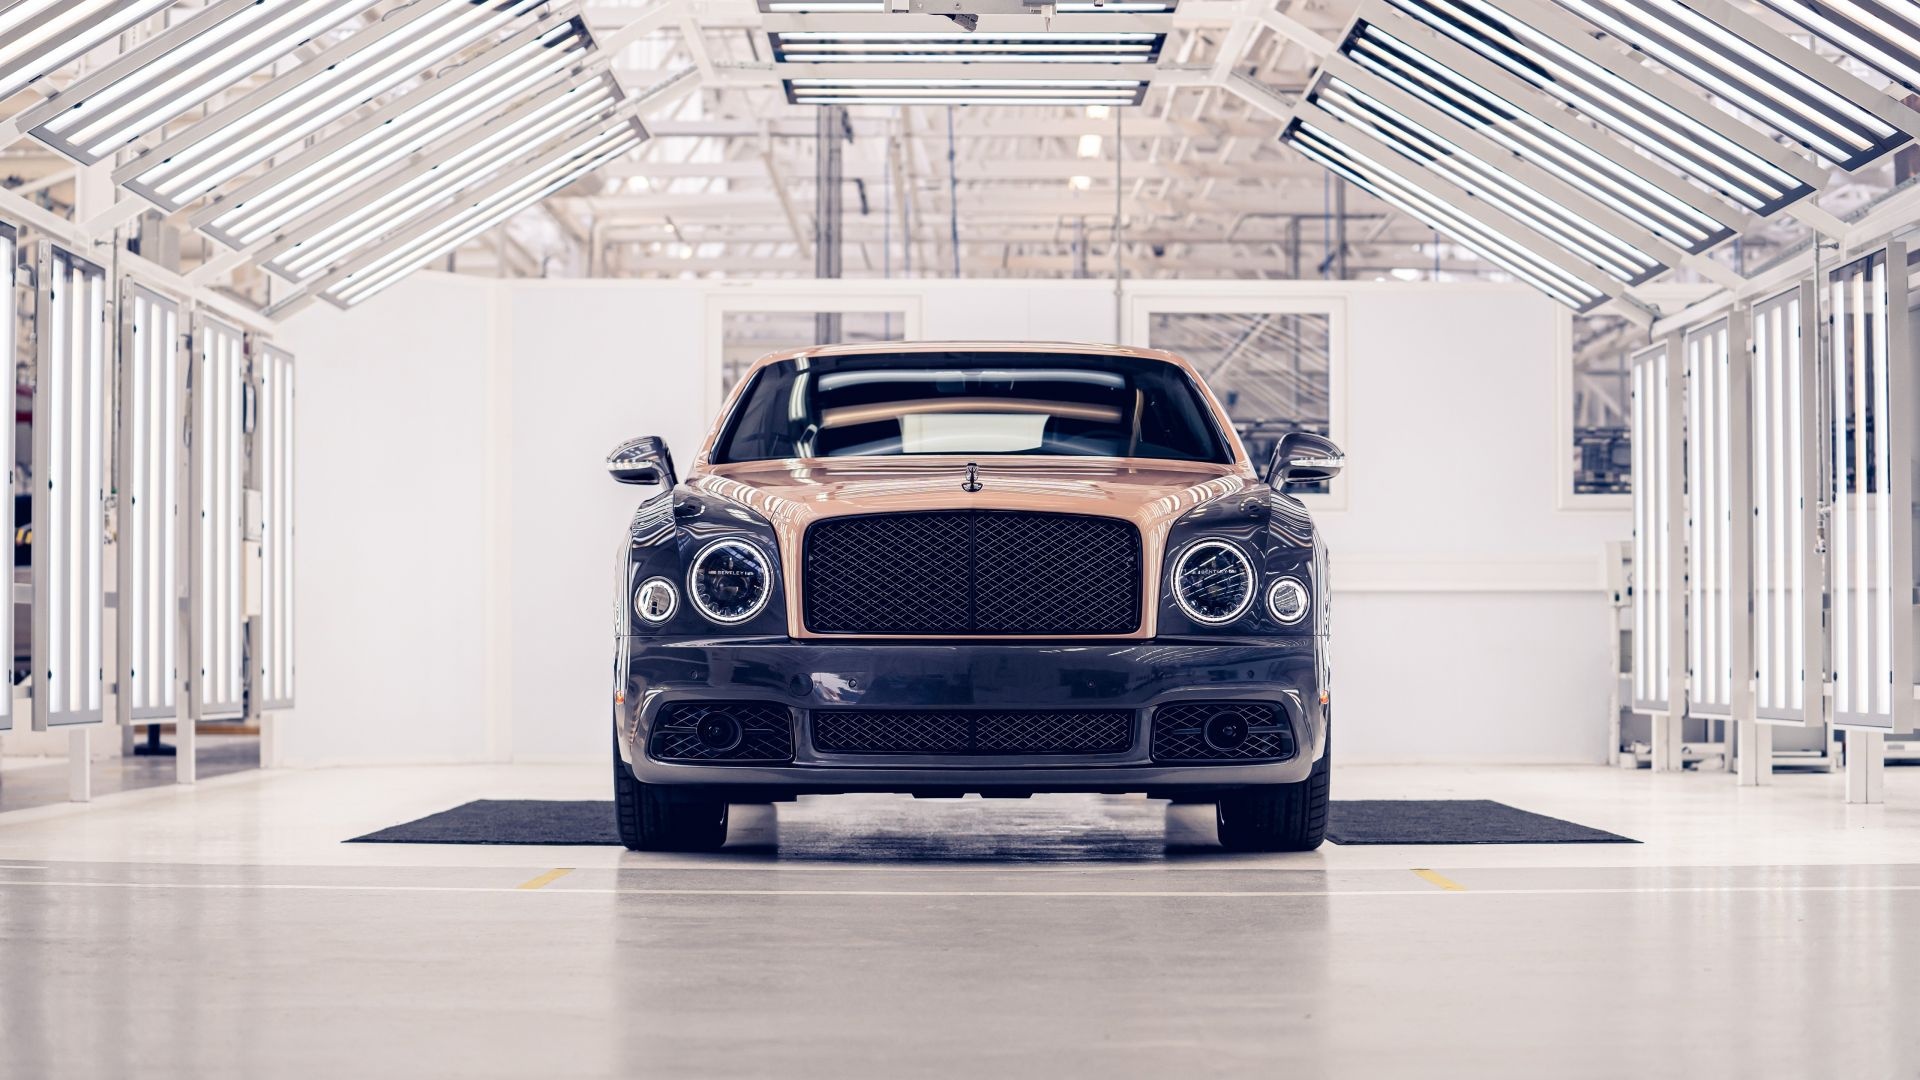 Bentley Mulsanne, Luxury car, HD image, Background, 1920x1080 Full HD Desktop